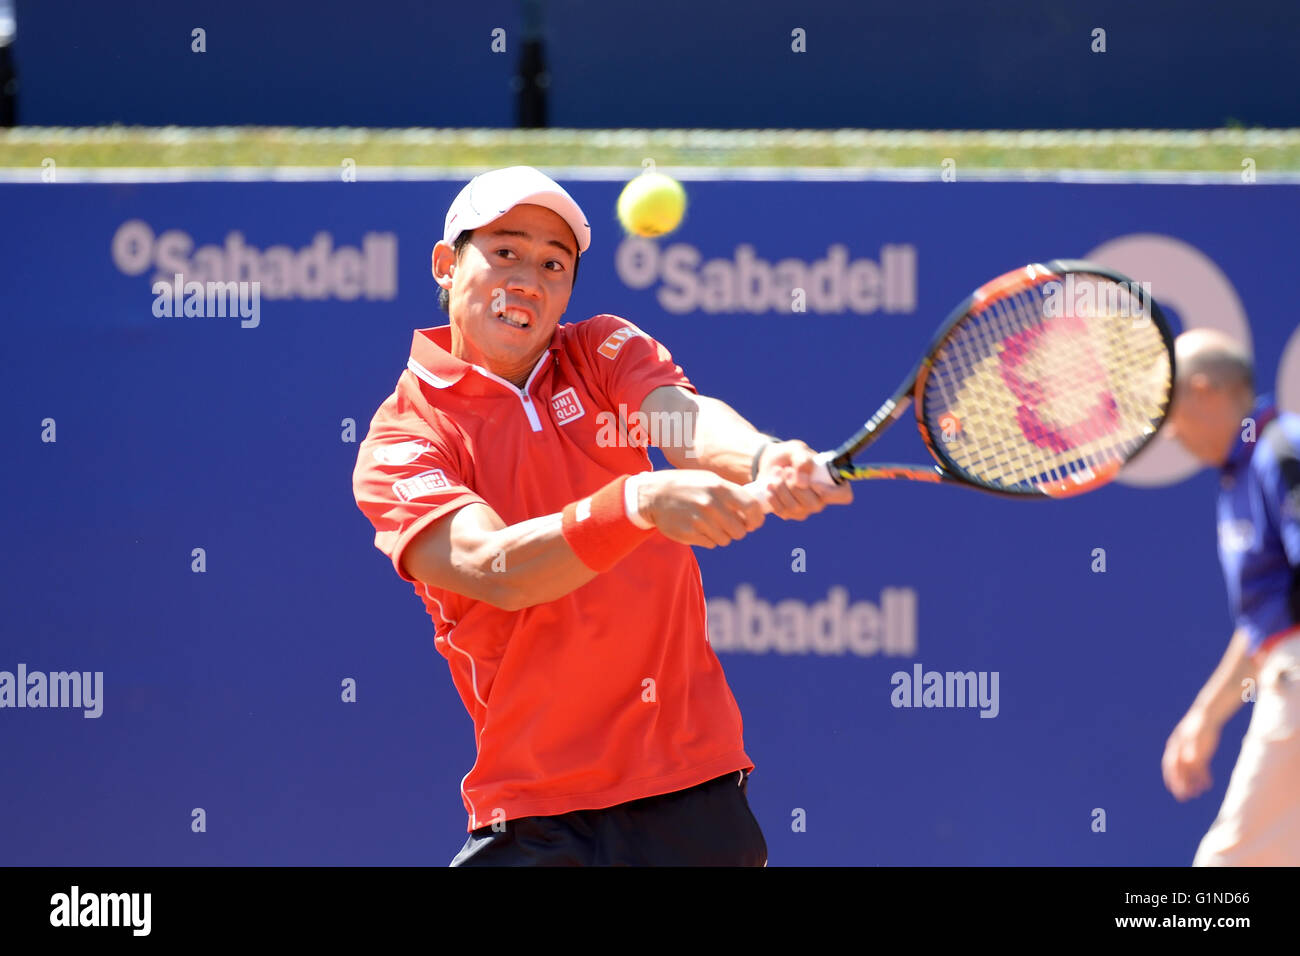 Barcelone - 21 avr : Kei Nishikori (joueur de tennis japonais) joue à l'ATP Open  de Barcelone Banc Sabadell Photo Stock - Alamy